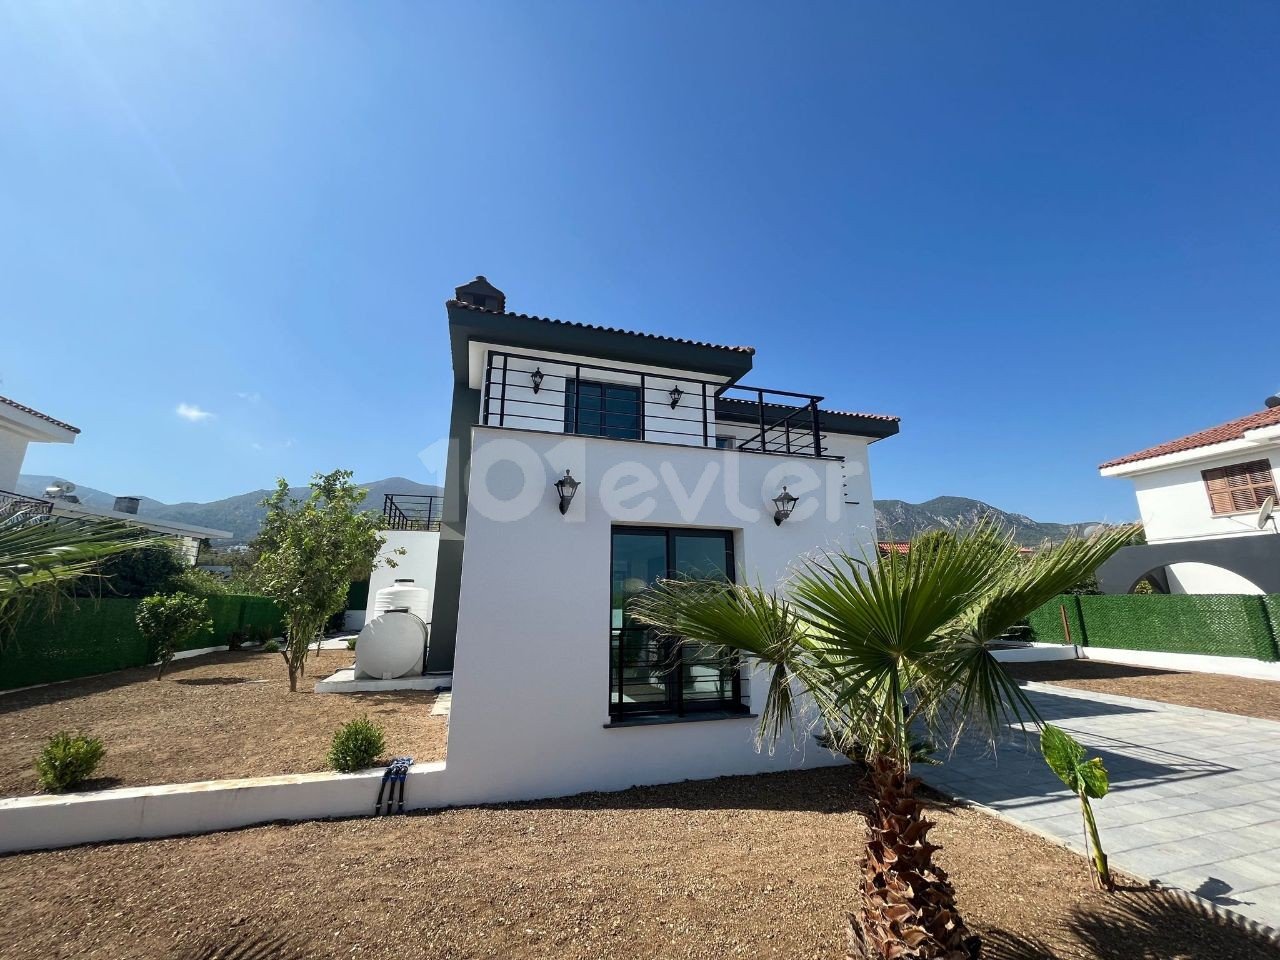 Satılık Villa - Bellapais, Girne, Kuzey Kıbrıs-adef6305-8591-4123-8f56-a9a5a42f7df8